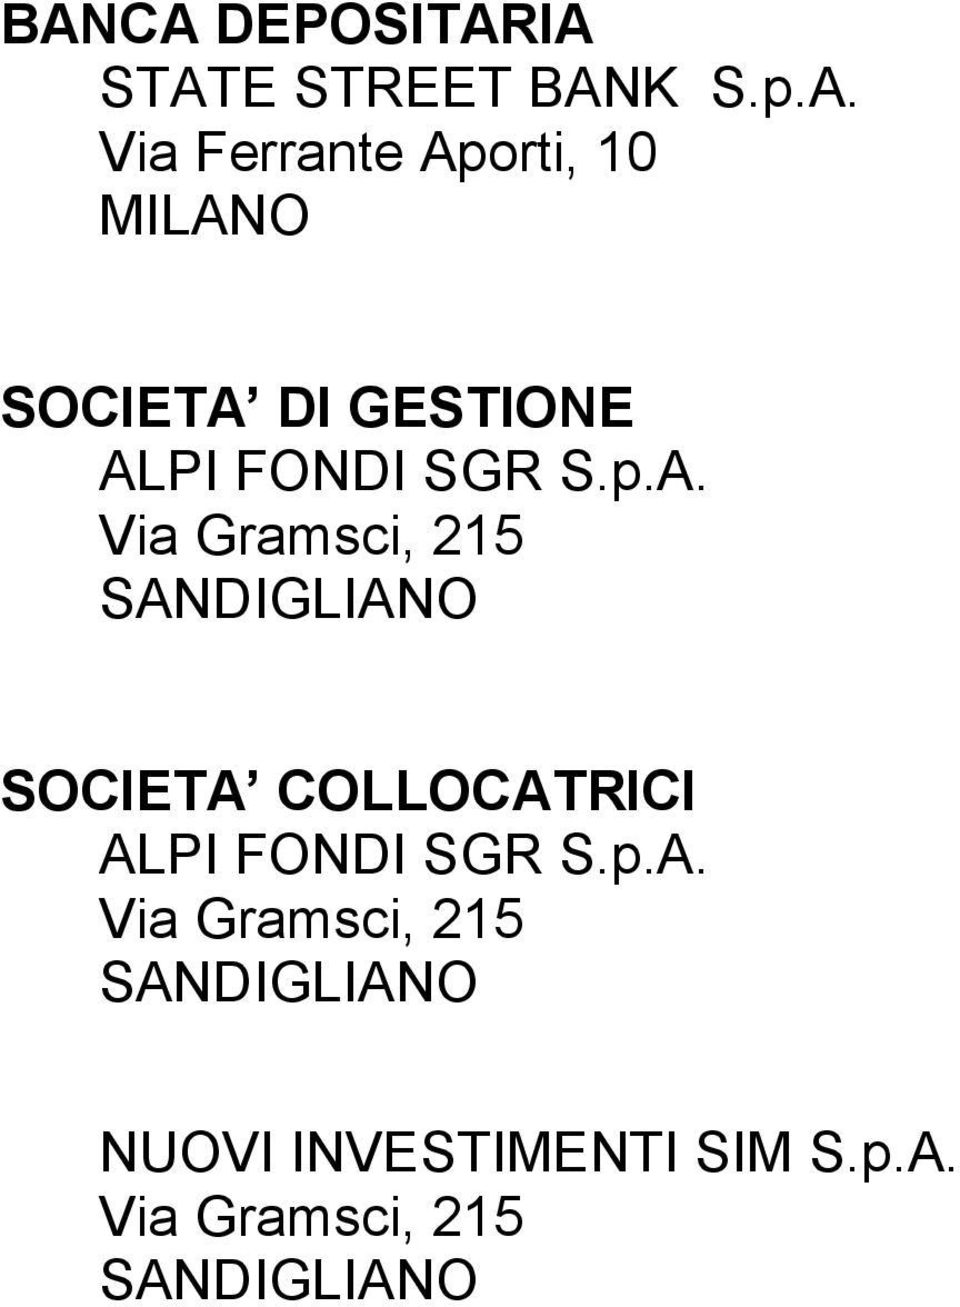 SANDIGLIANO SOCIETA COLLOCATRICI ALPI FONDI SGR S.p.A. Via Gramsci, 215 SANDIGLIANO NUOVI INVESTIMENTI SIM S.